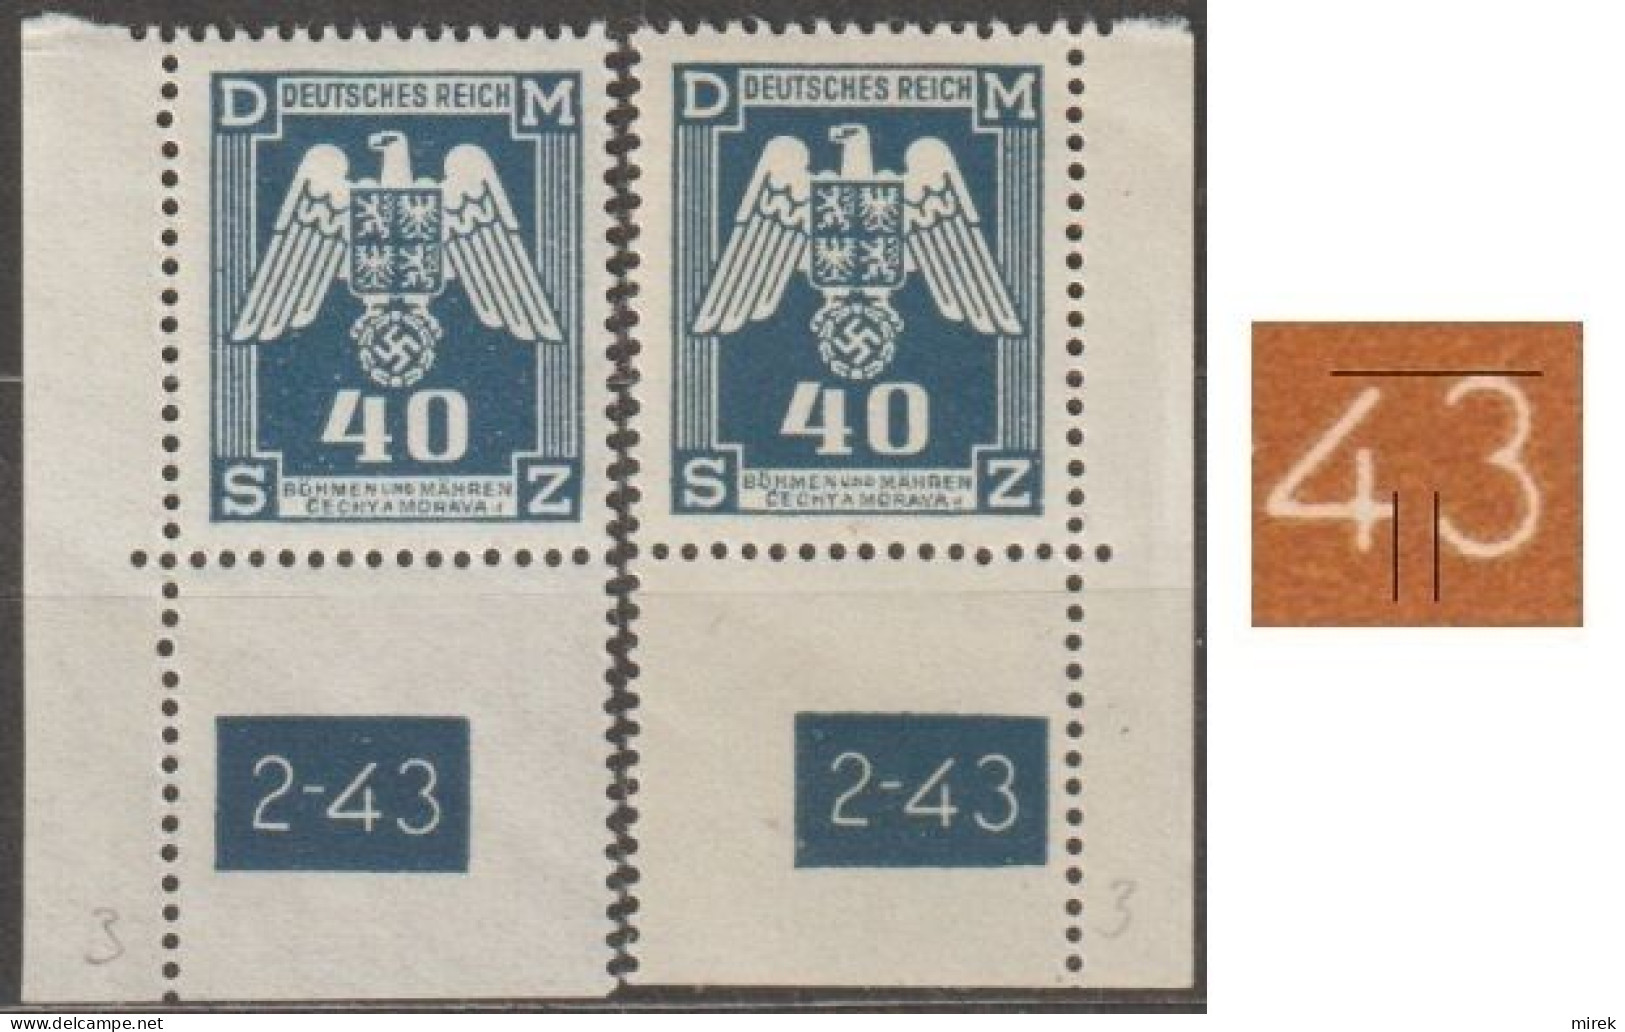 027a/ Pof. SL 14, Corner Stamps, Plate Number 2-43, Type 2, Var. 3 - Ongebruikt